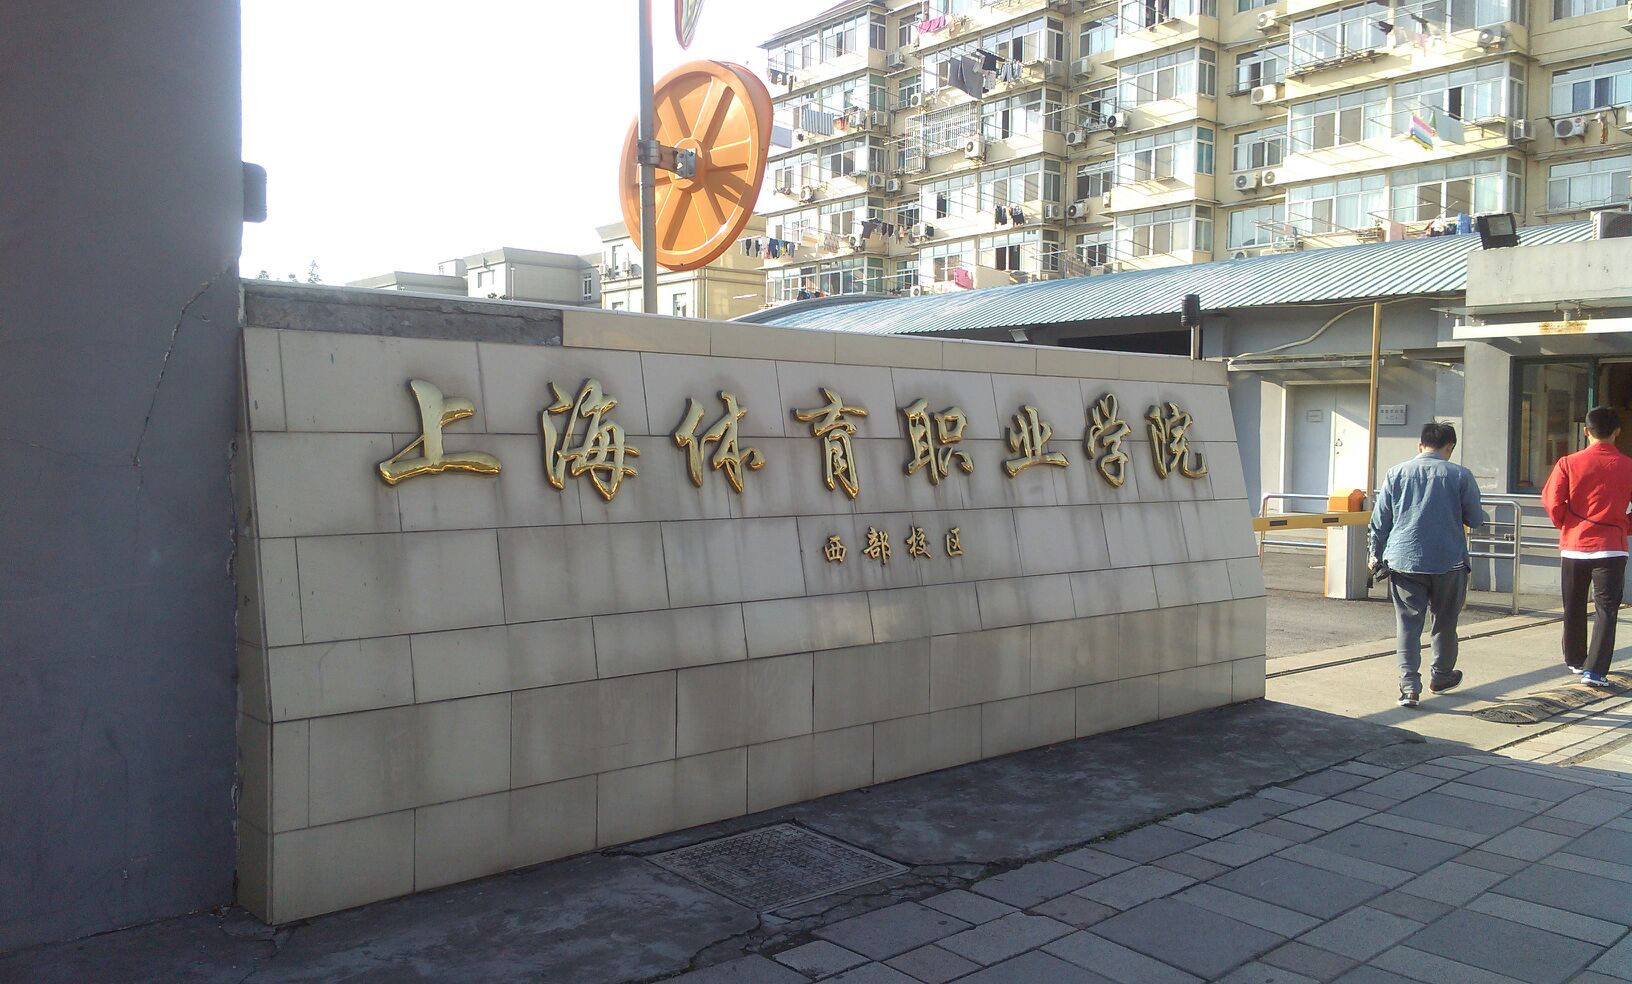 上海体育学院徐汇校区图片